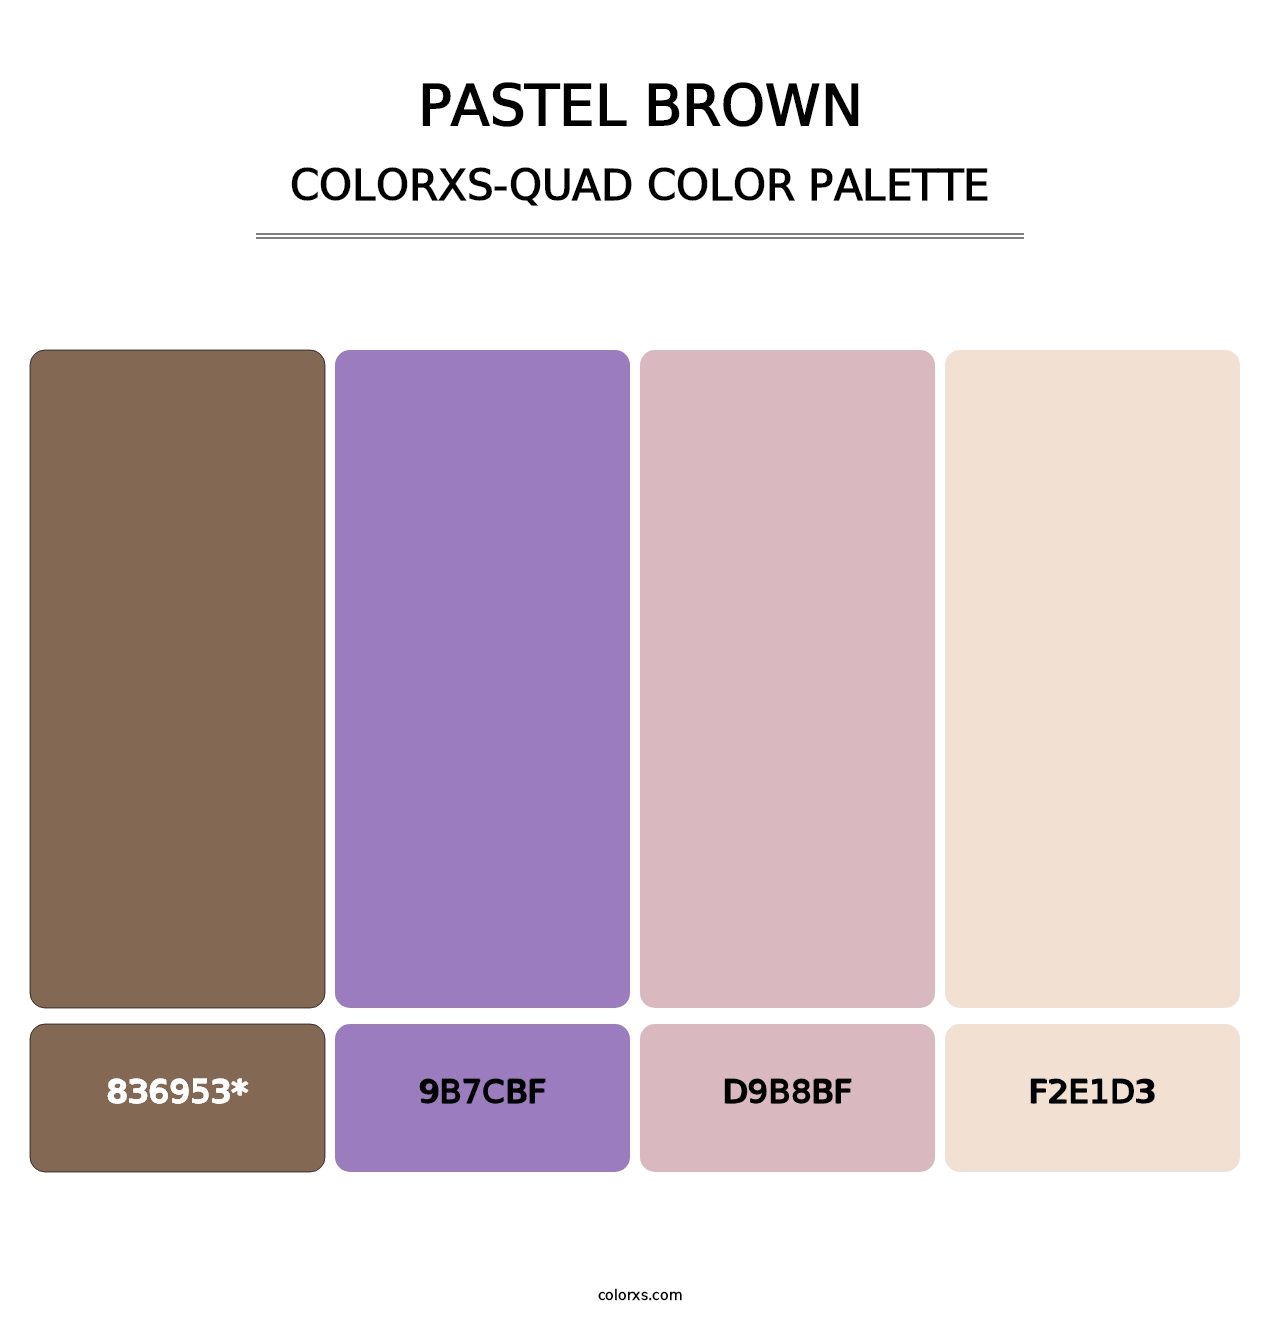 Pastel Brown - Colorxs Quad Palette